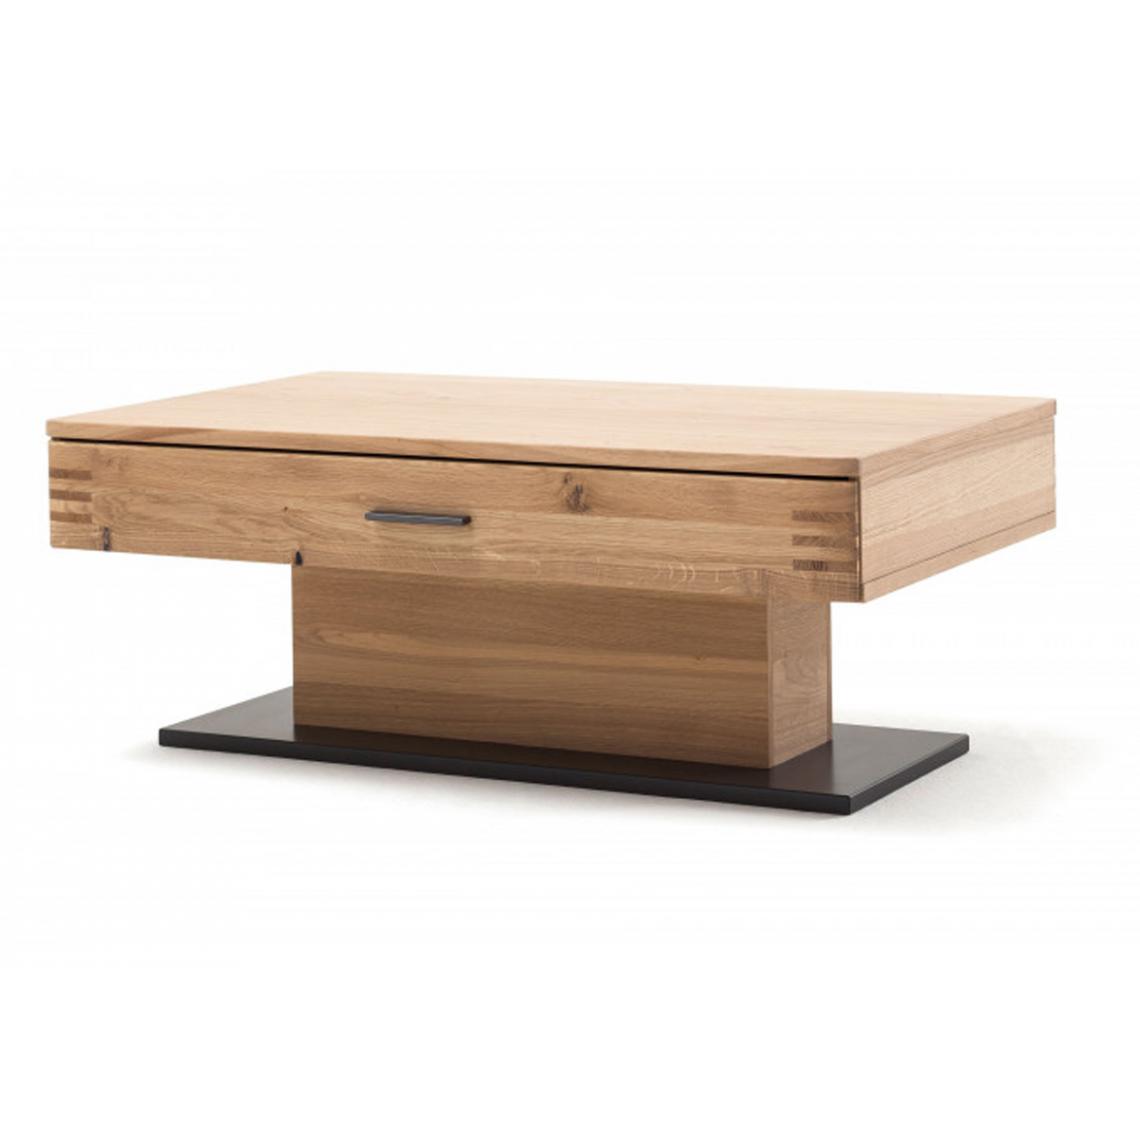 Pegane - Table basse avec rangements en chêne sombre bianco - L.115 x H.45 x P.70 cm - Tables basses